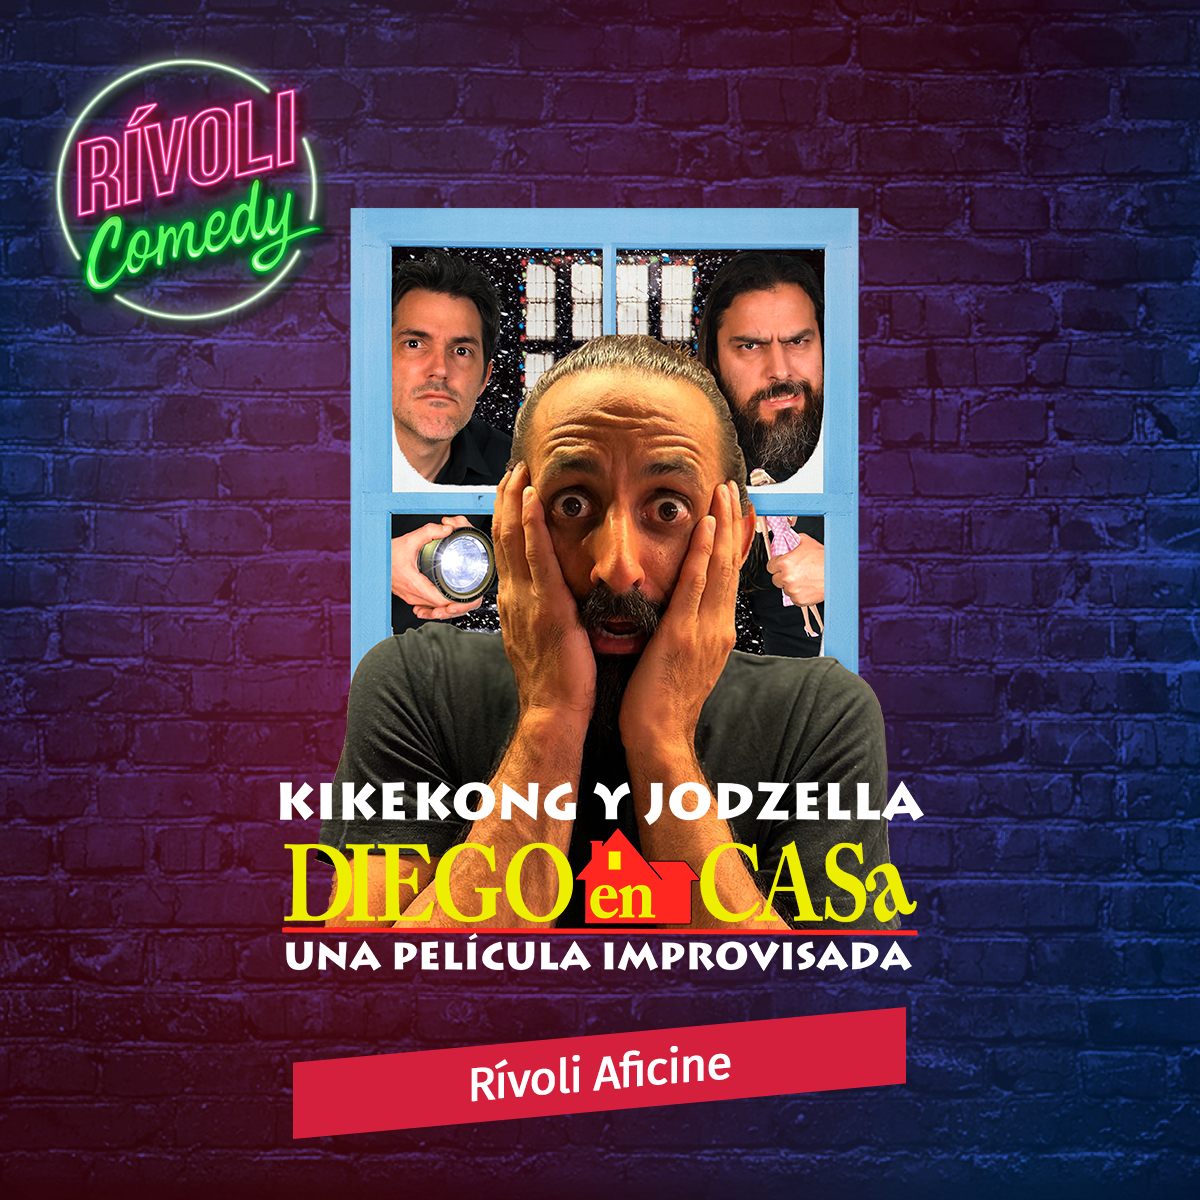 Kike Kong y Jodzella | Una película improvisada · 28 de enero · Palma de Mallorca (Rívoli Comedy)